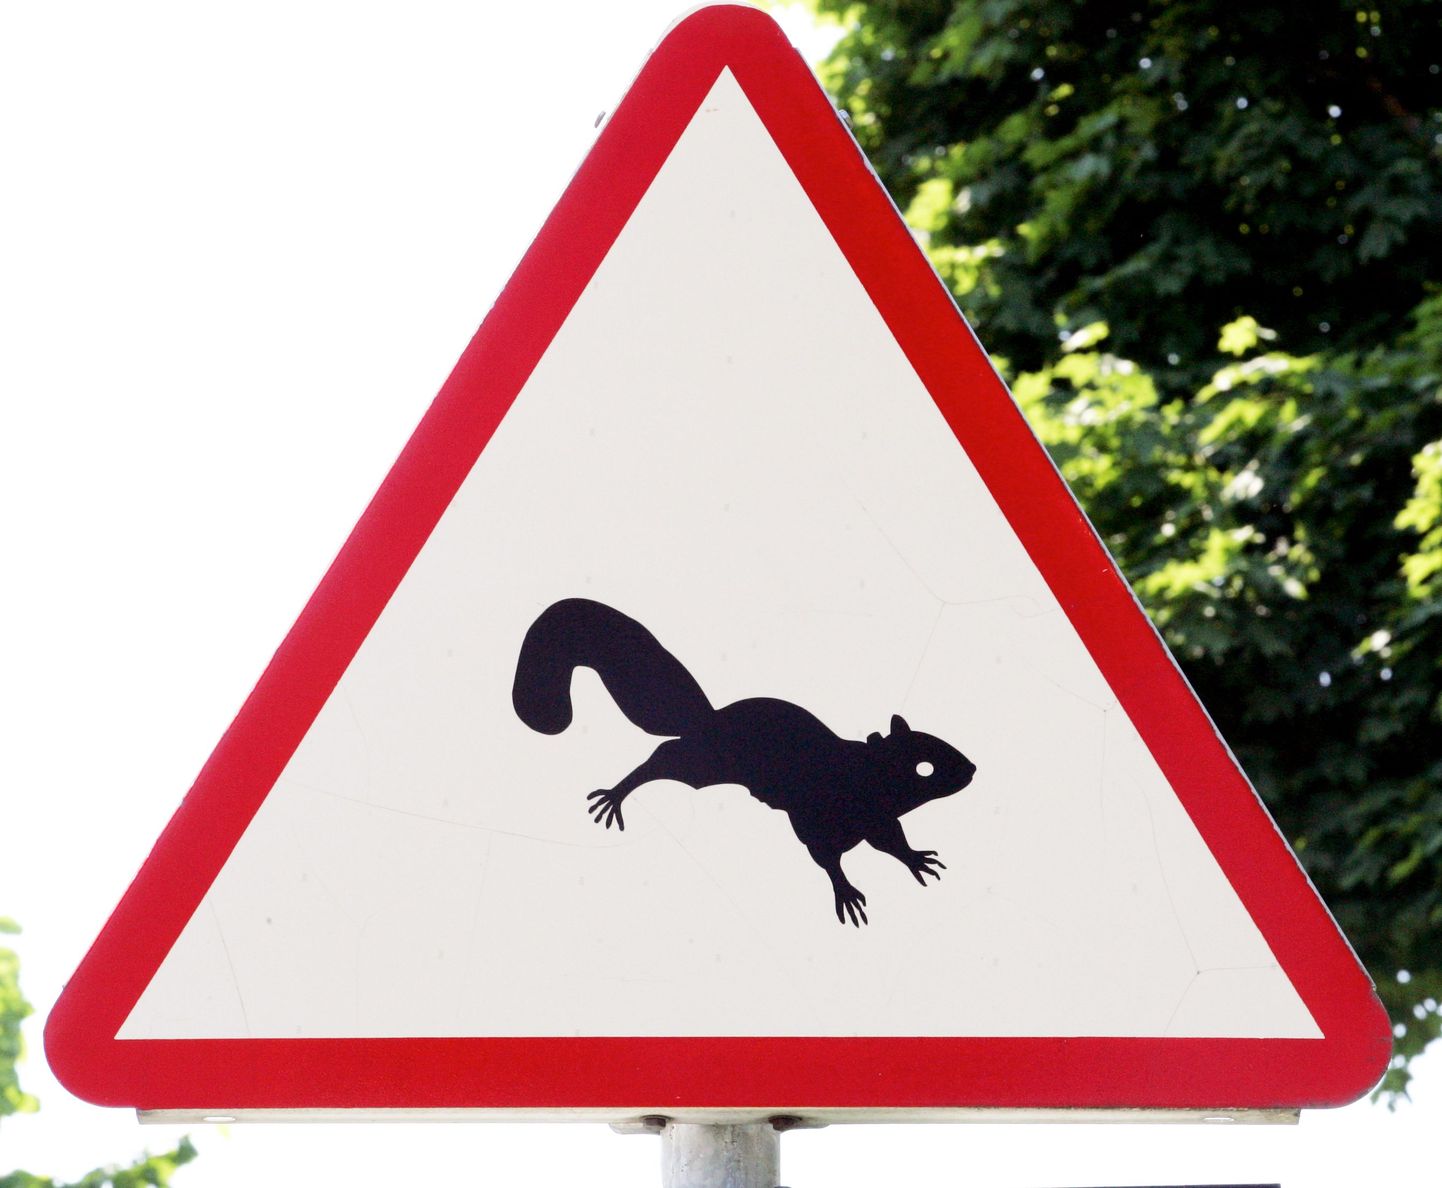 Liiklusmärk hoiatab oravatest teel. Aga Rakveres ohustavad liiklust neljarattalised lendoravad.